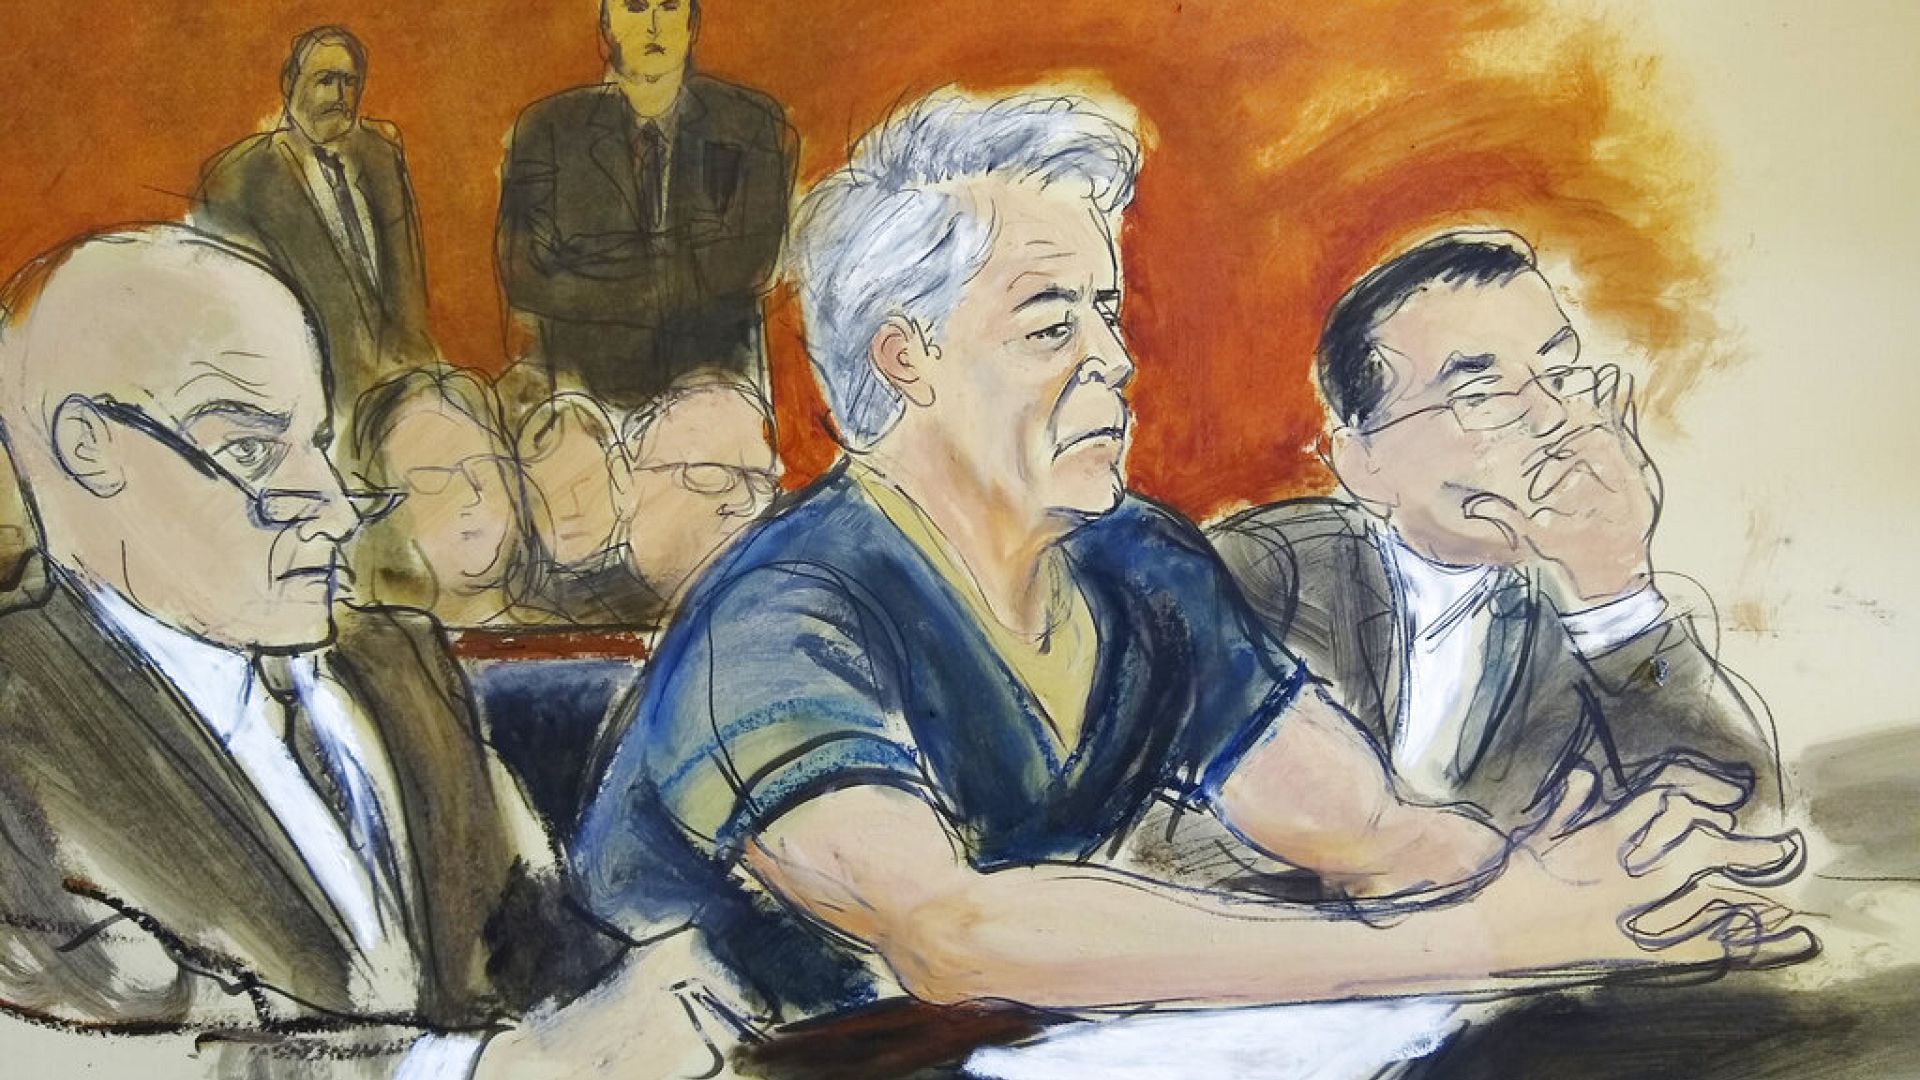 Son mahkeme dosyaları da açıldı: Epstein beş yüzden fazla soruyu cevapsız bırakmış